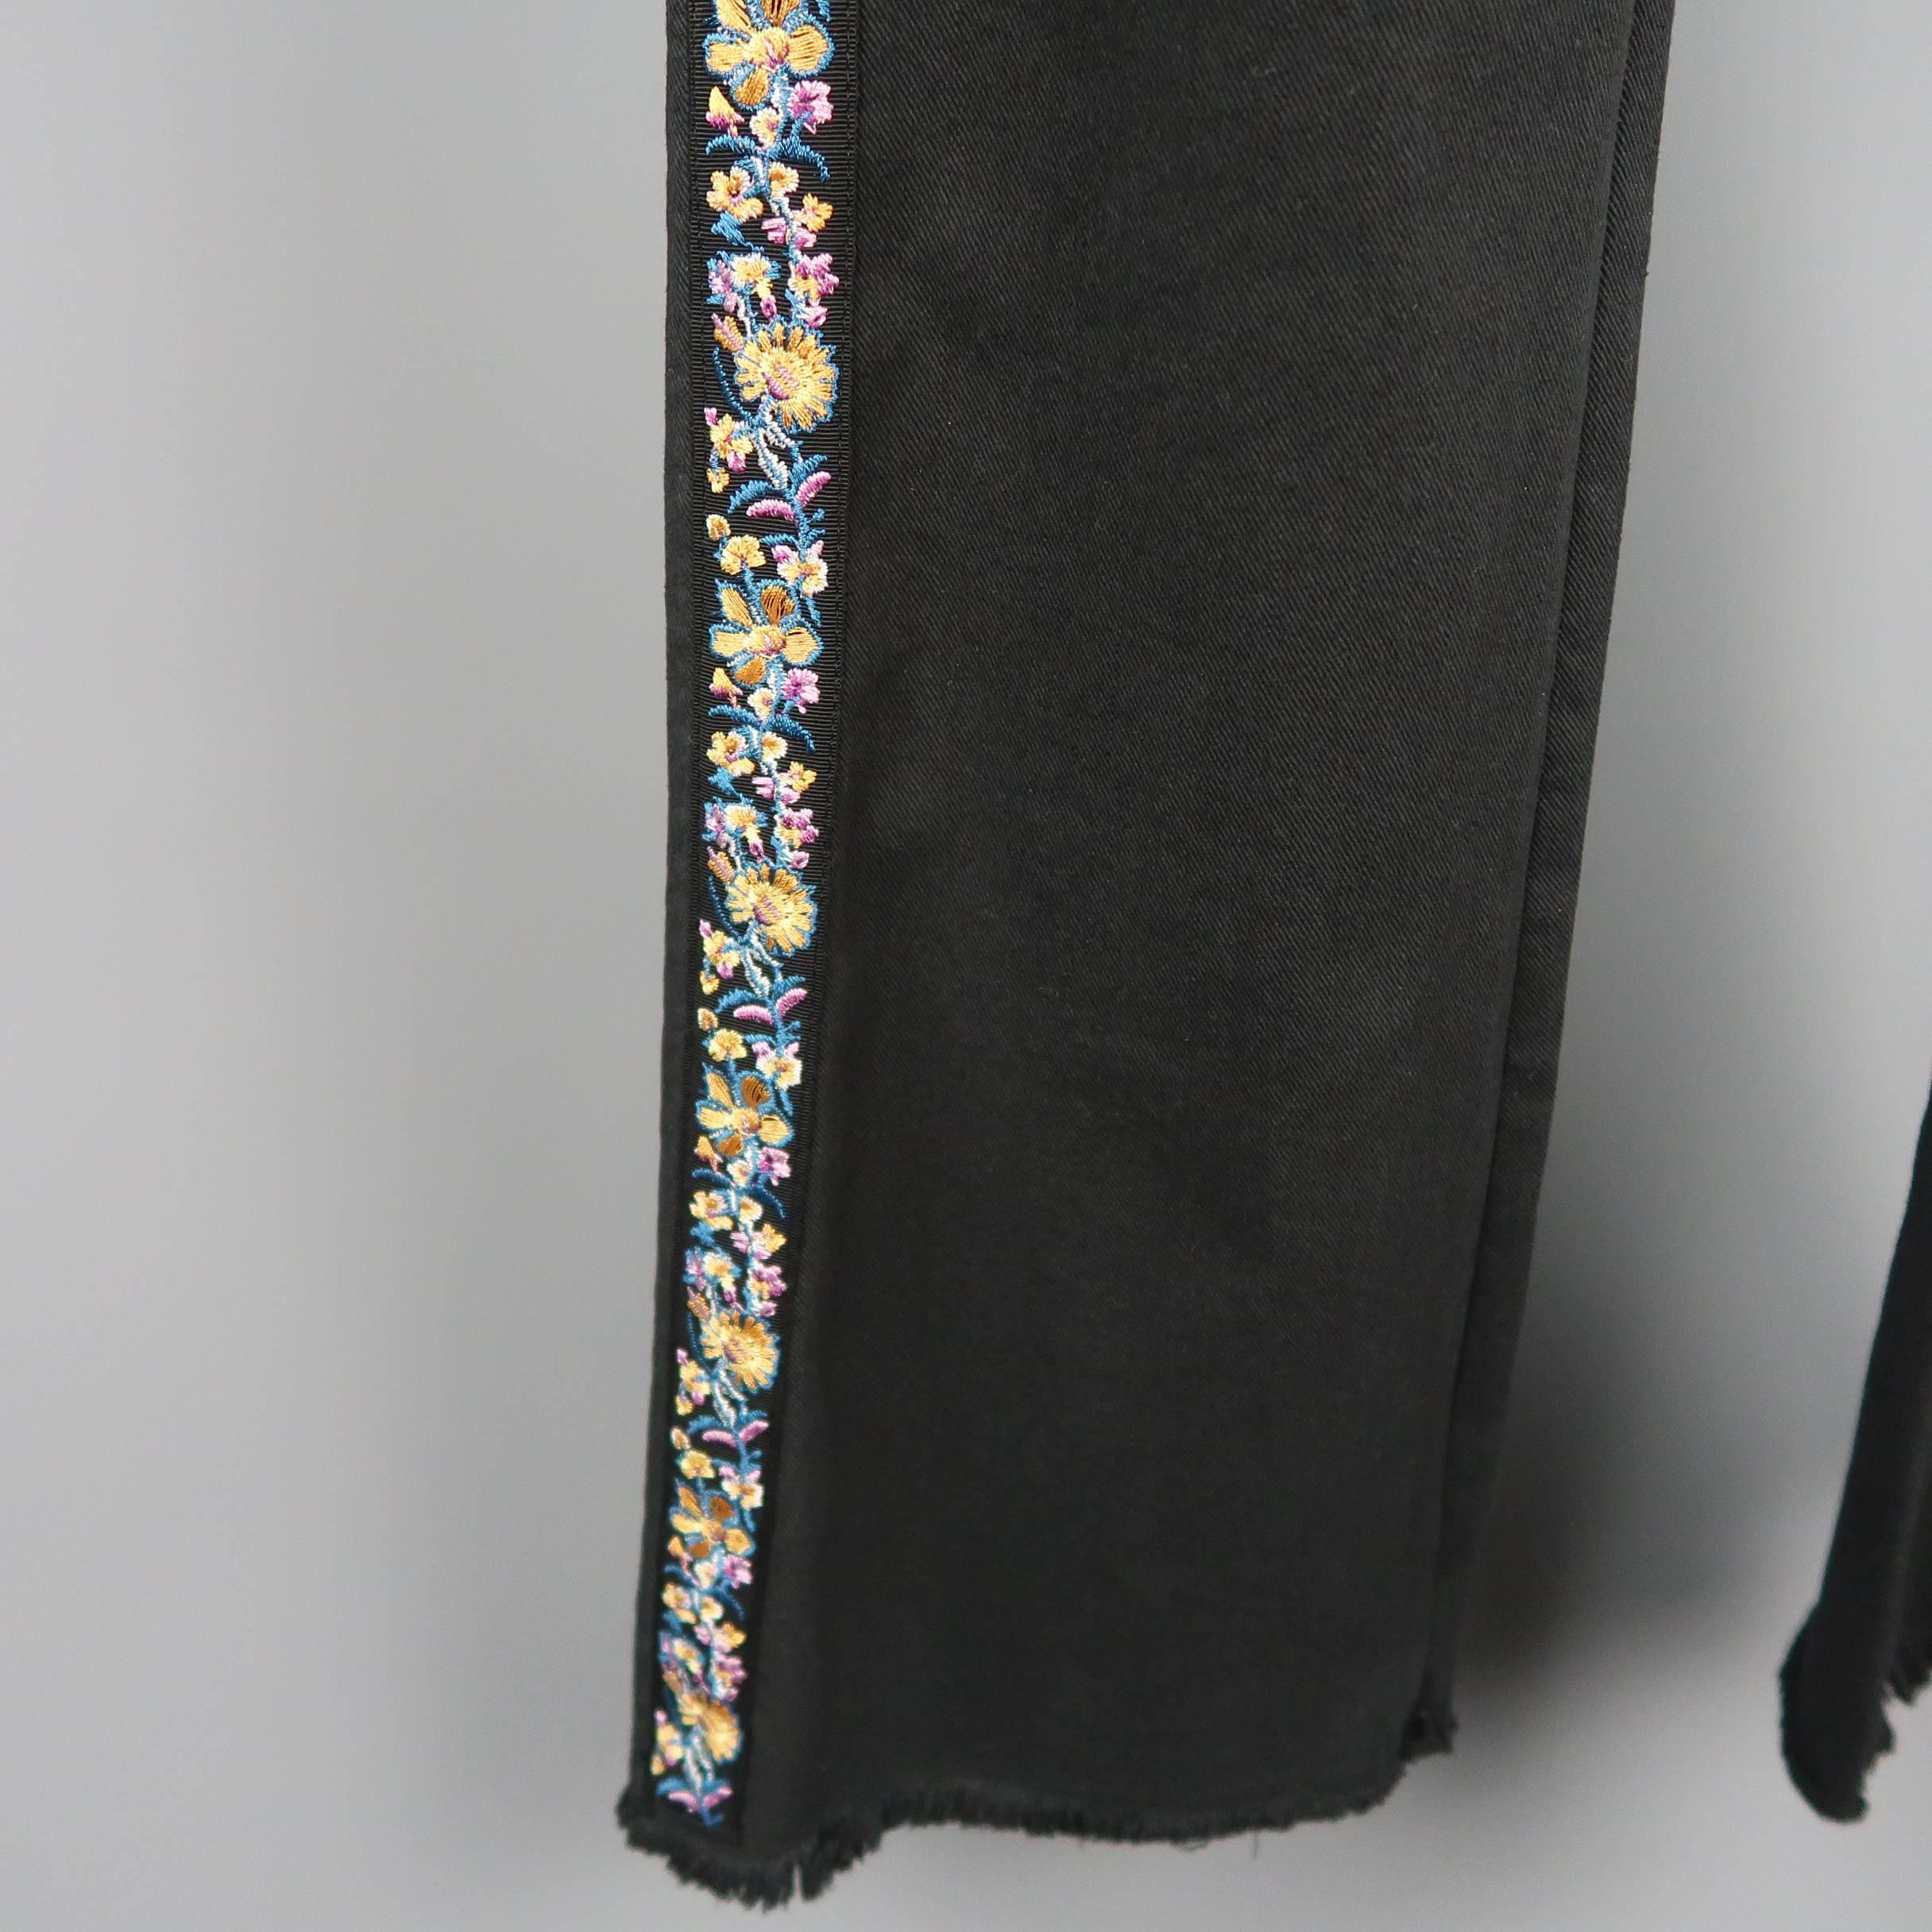 Women's ETRO Size 29 Black Stretch Cotton Floral Trim Boot Cut Jeans